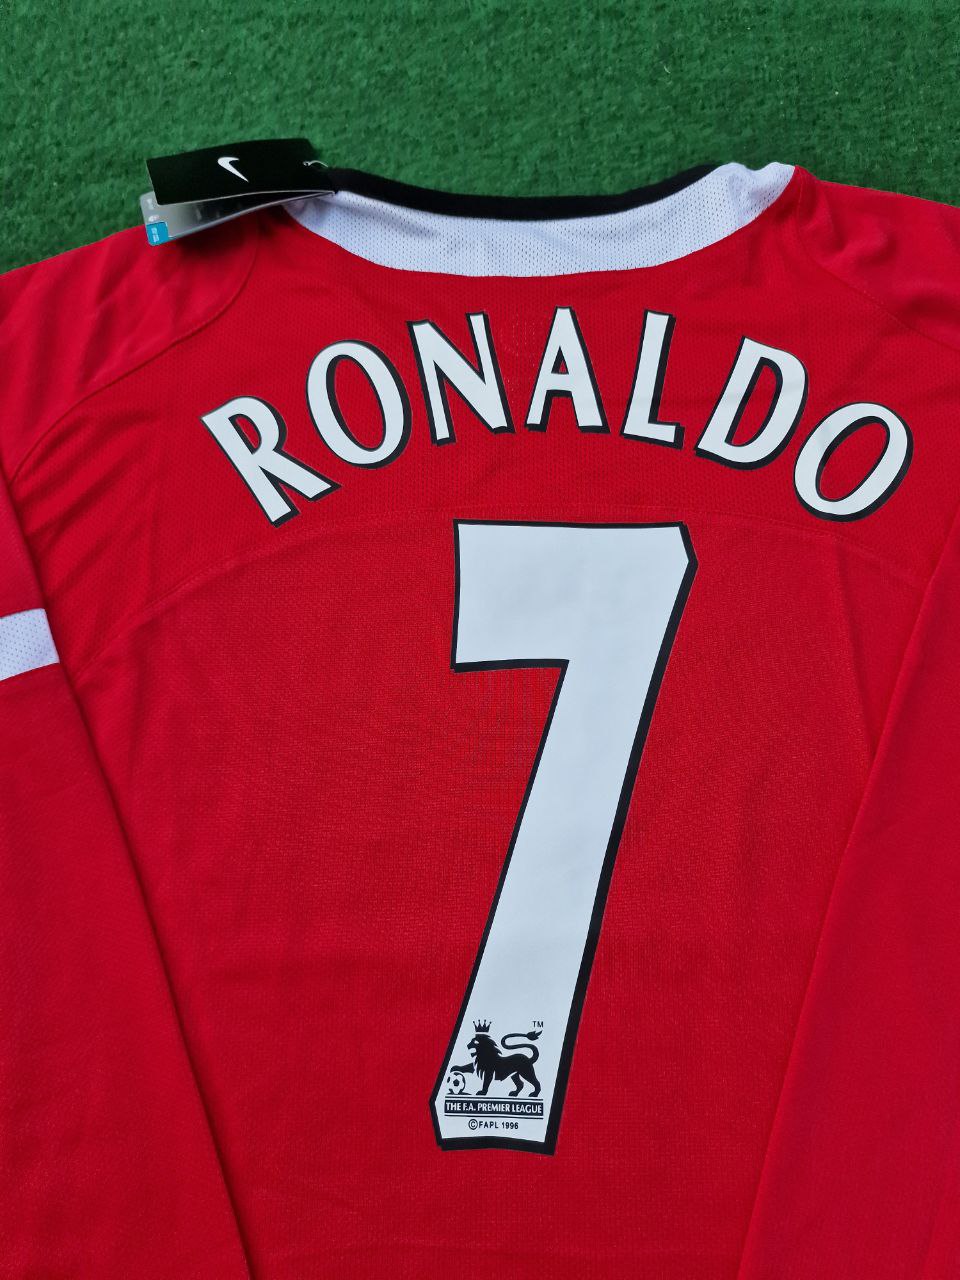 Cristiano Ronaldo Manchester United 2005 Retro-Fußballtrikot